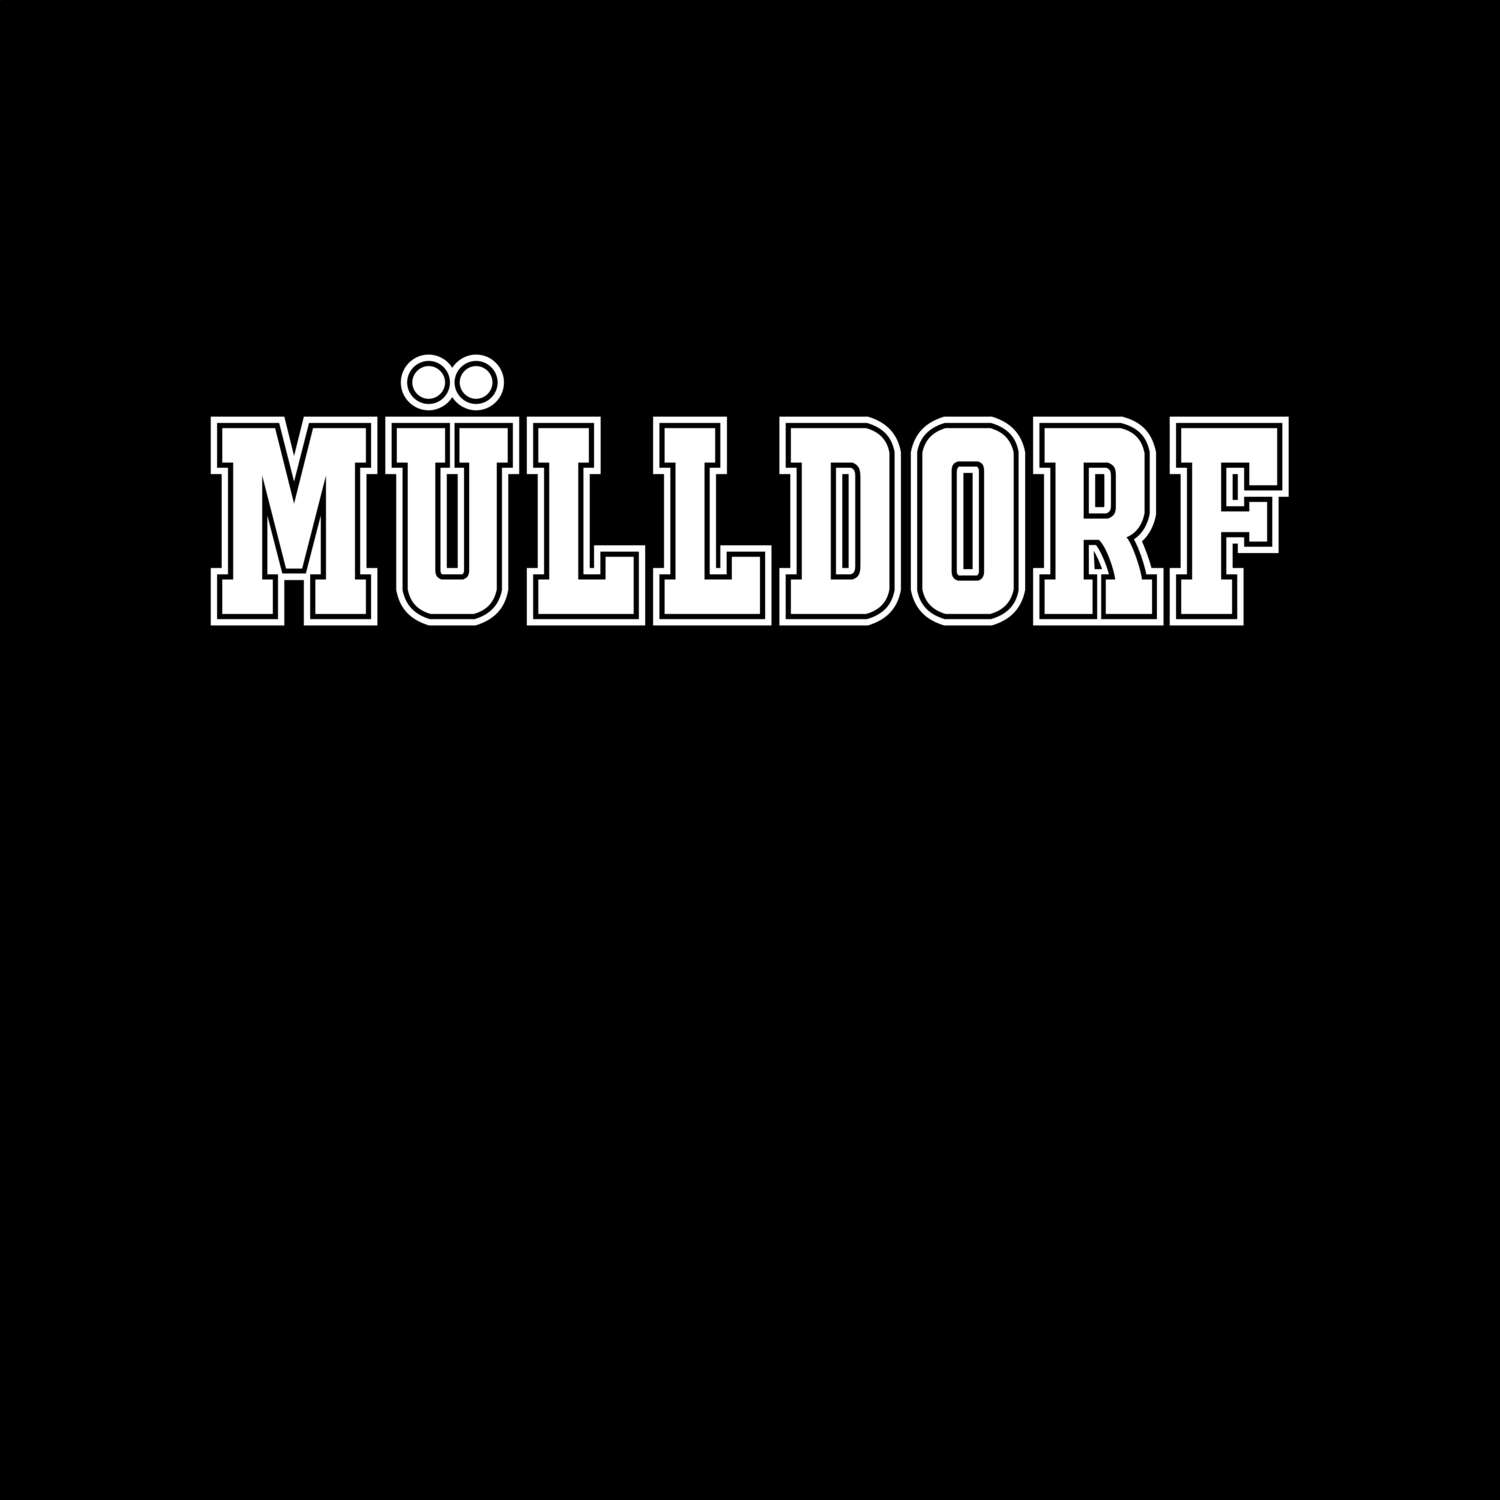 Mülldorf T-Shirt »Classic«